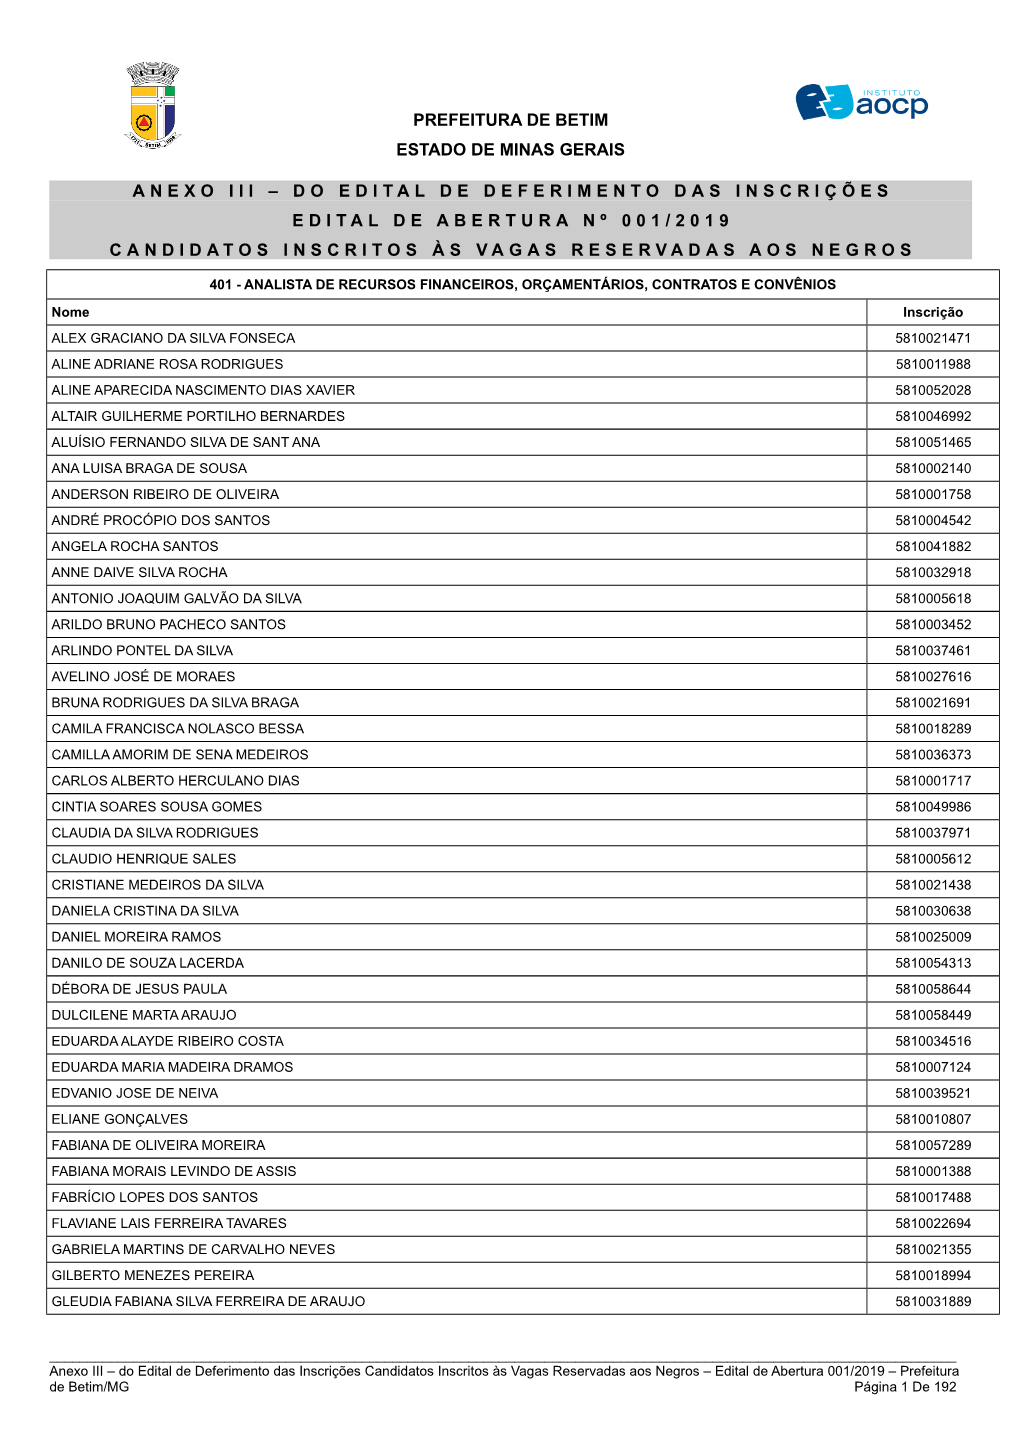 Anexo Iii – Do Edital De Deferimento Das Inscrições Edital De Abertura Nº 001/2019 Candidatos Inscritos Às Vagas Reservadas Aos Negros